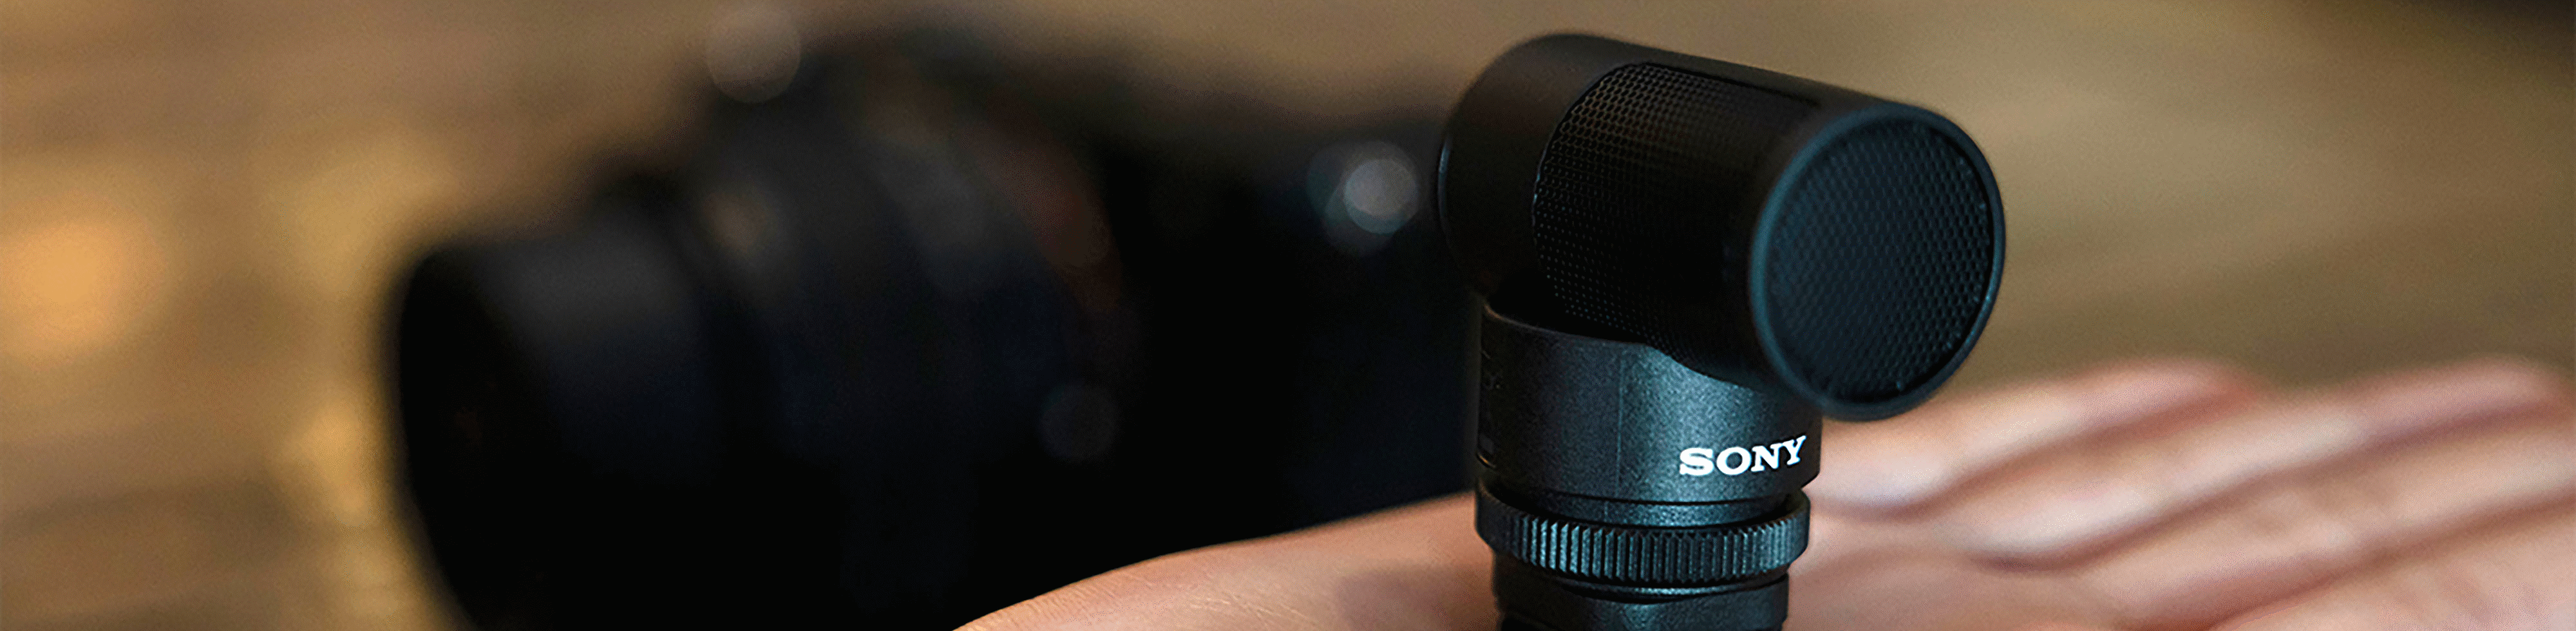 Zdjęcie mikrofonu ECM-G1 na dłoni, wystarczająco małego, by zmieścić się w jednej ręce.